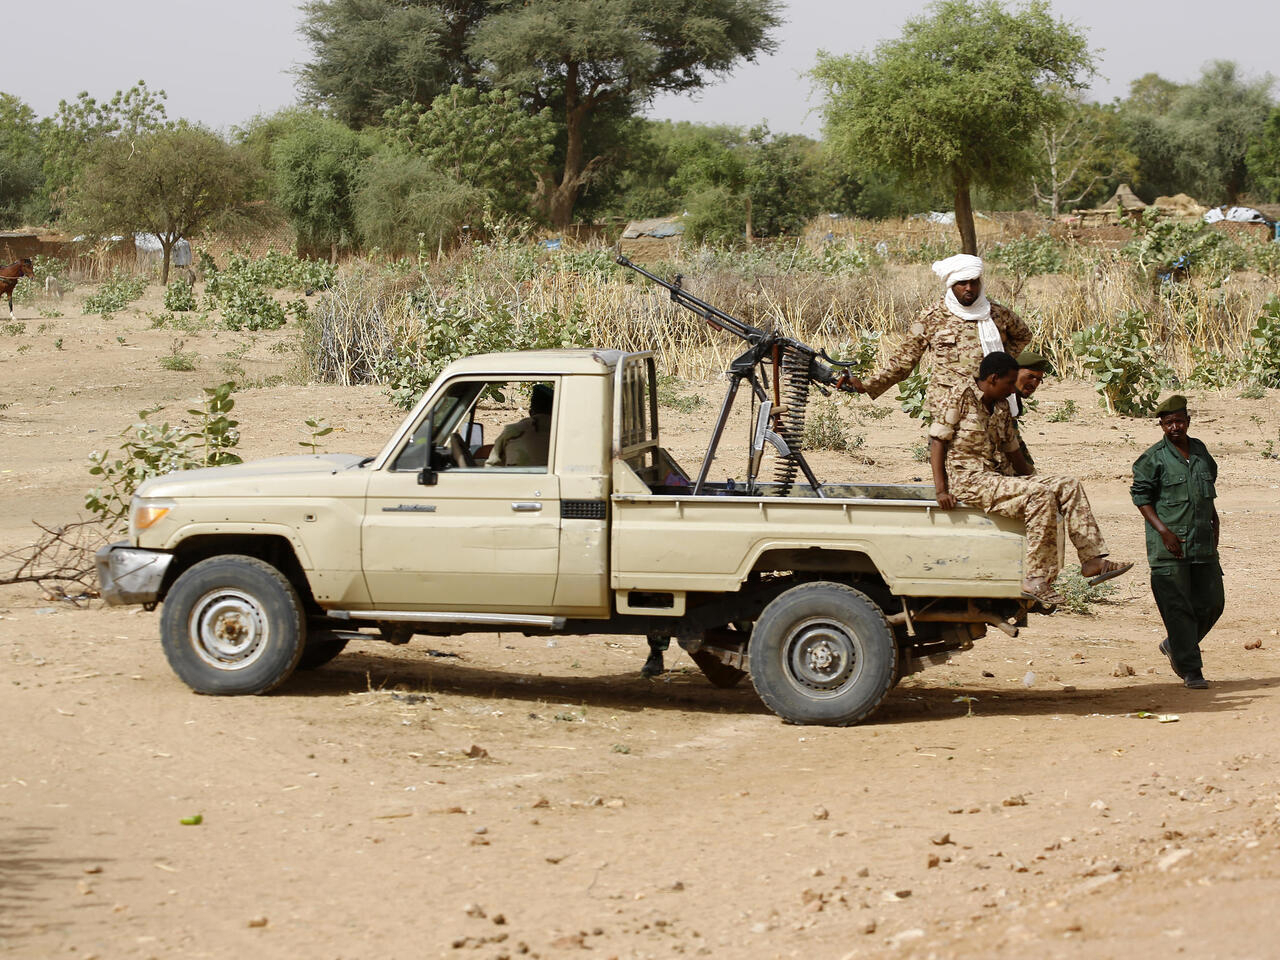  Cien personas mueren en enfrentamientos tribales en Darfur, Sudán